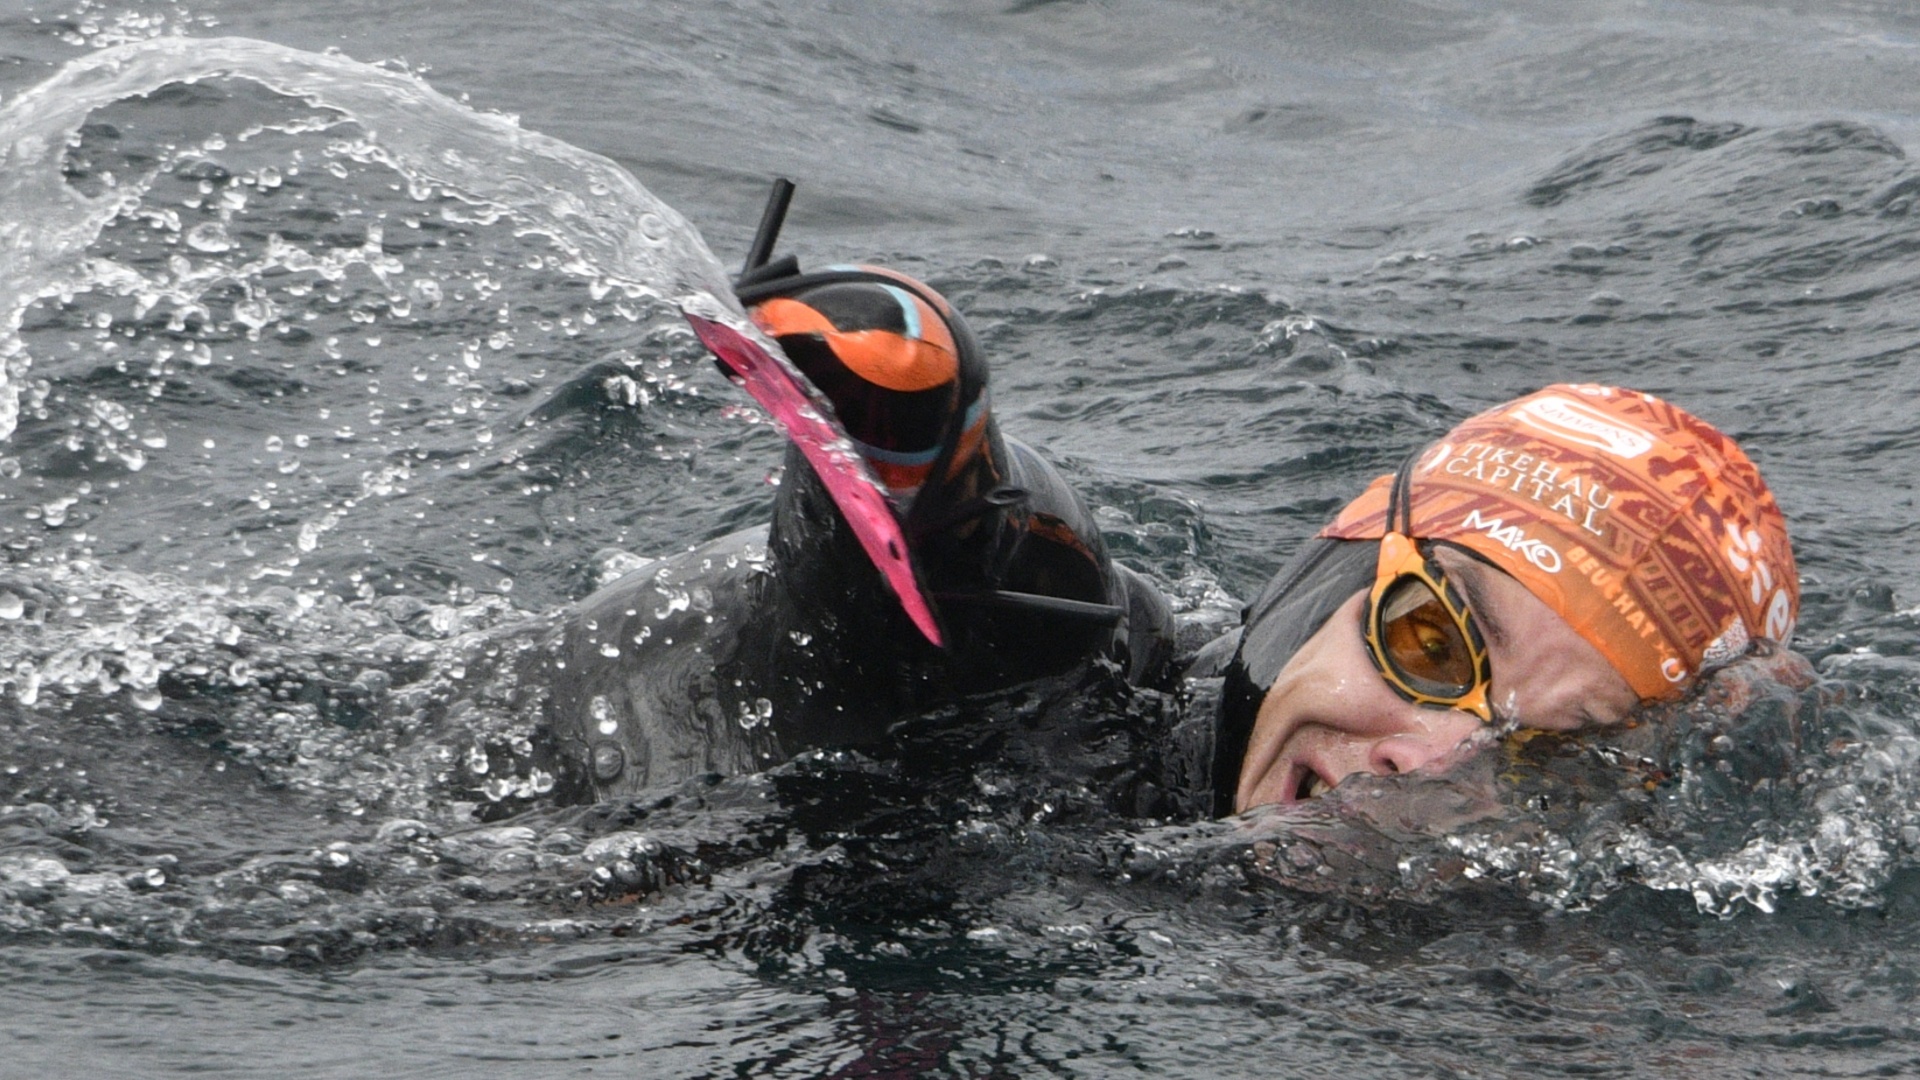 Пловец без конечностей покорил озеро Титикака